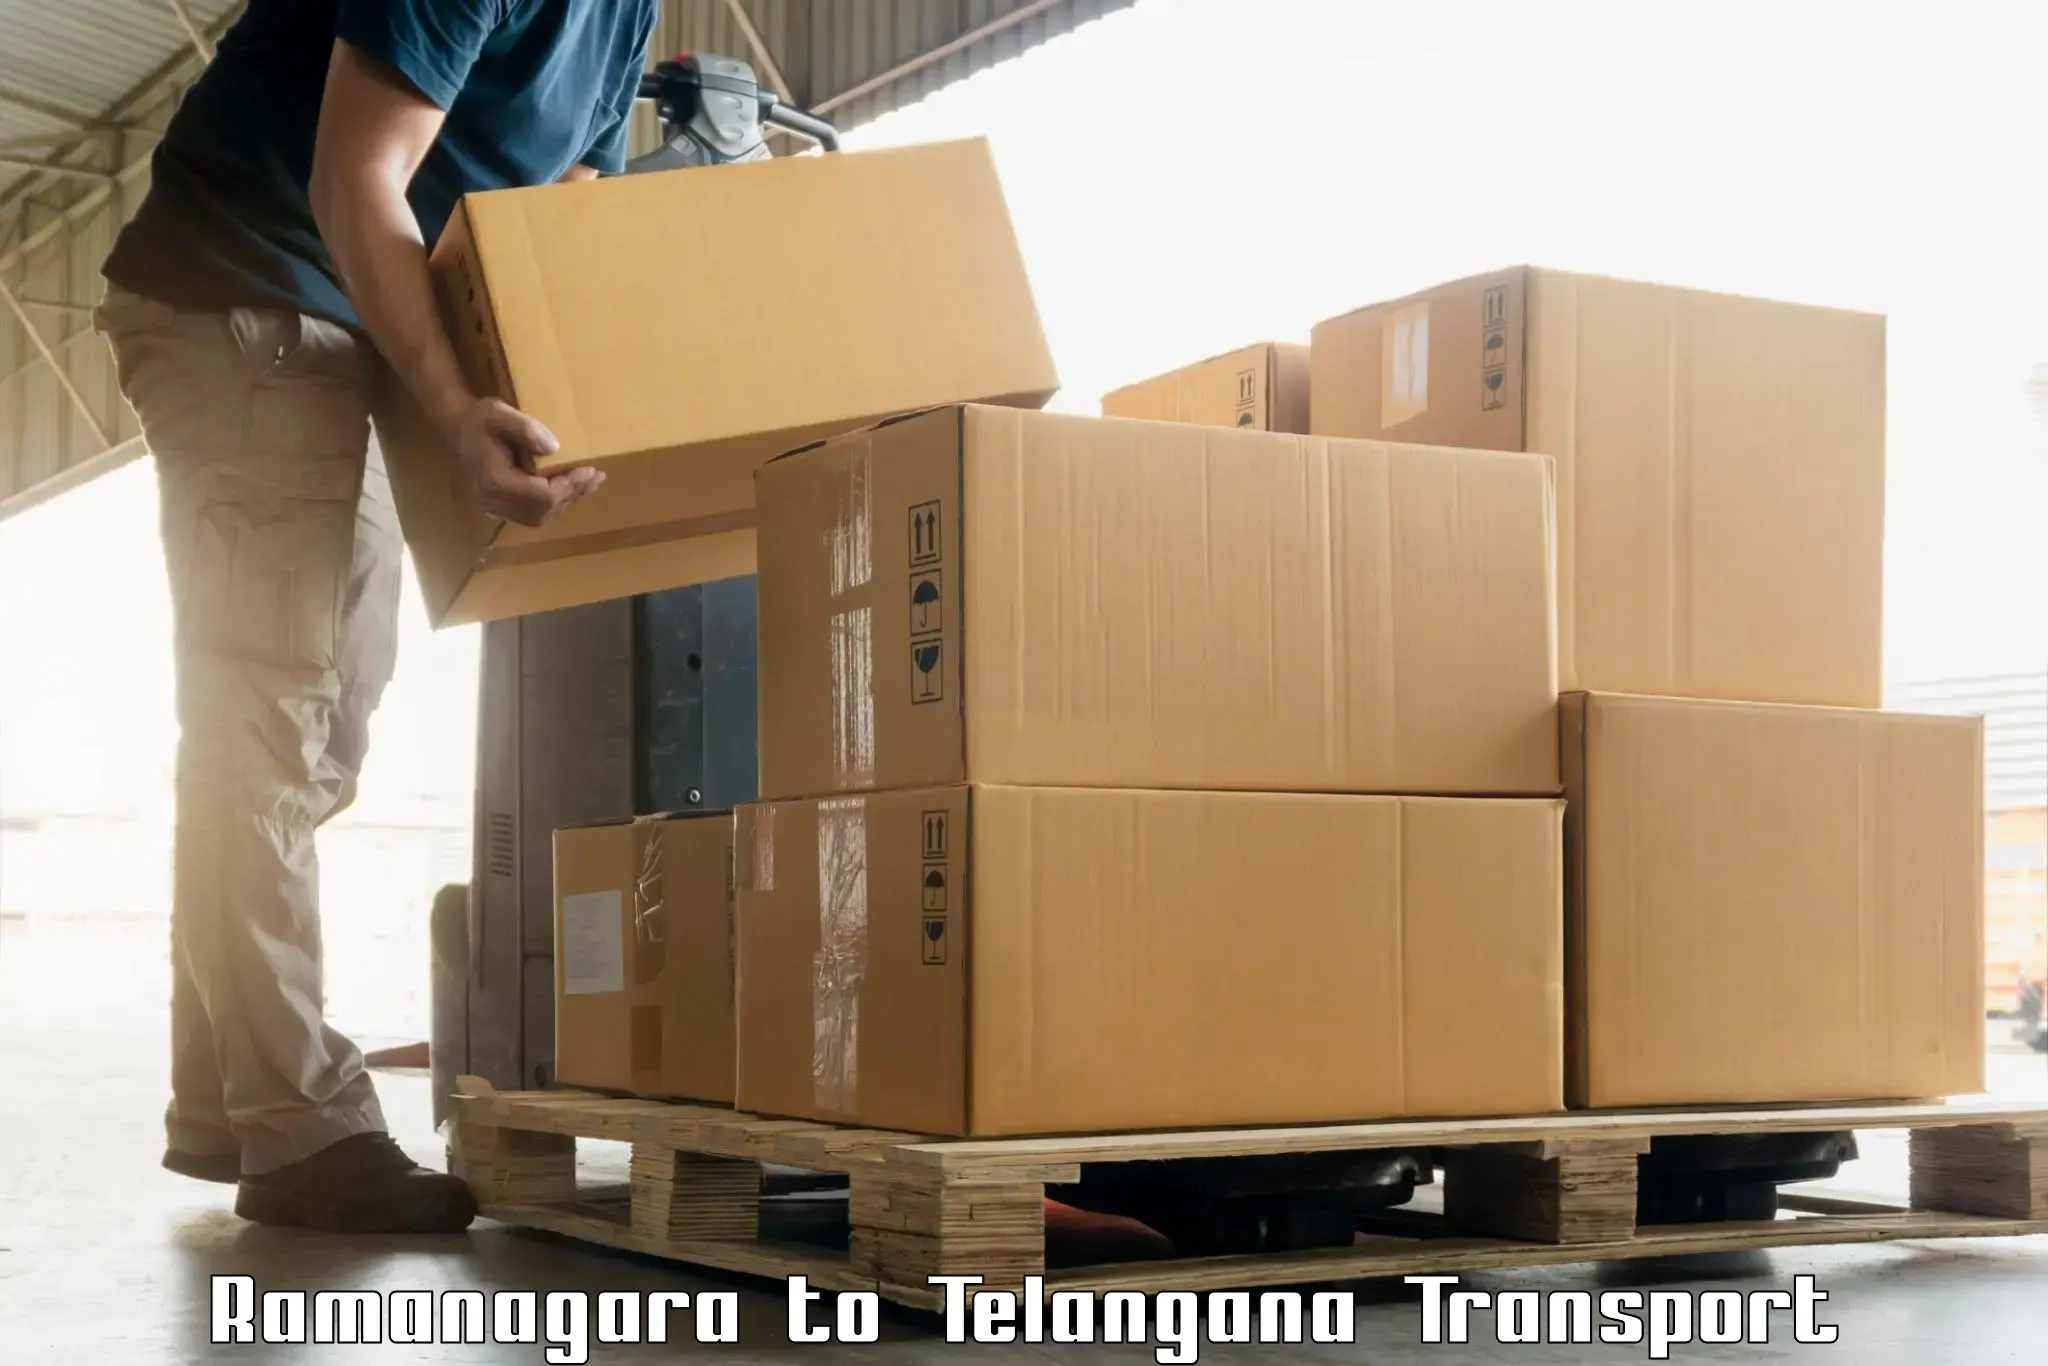 Cargo transportation services in Ramanagara to Nalgonda